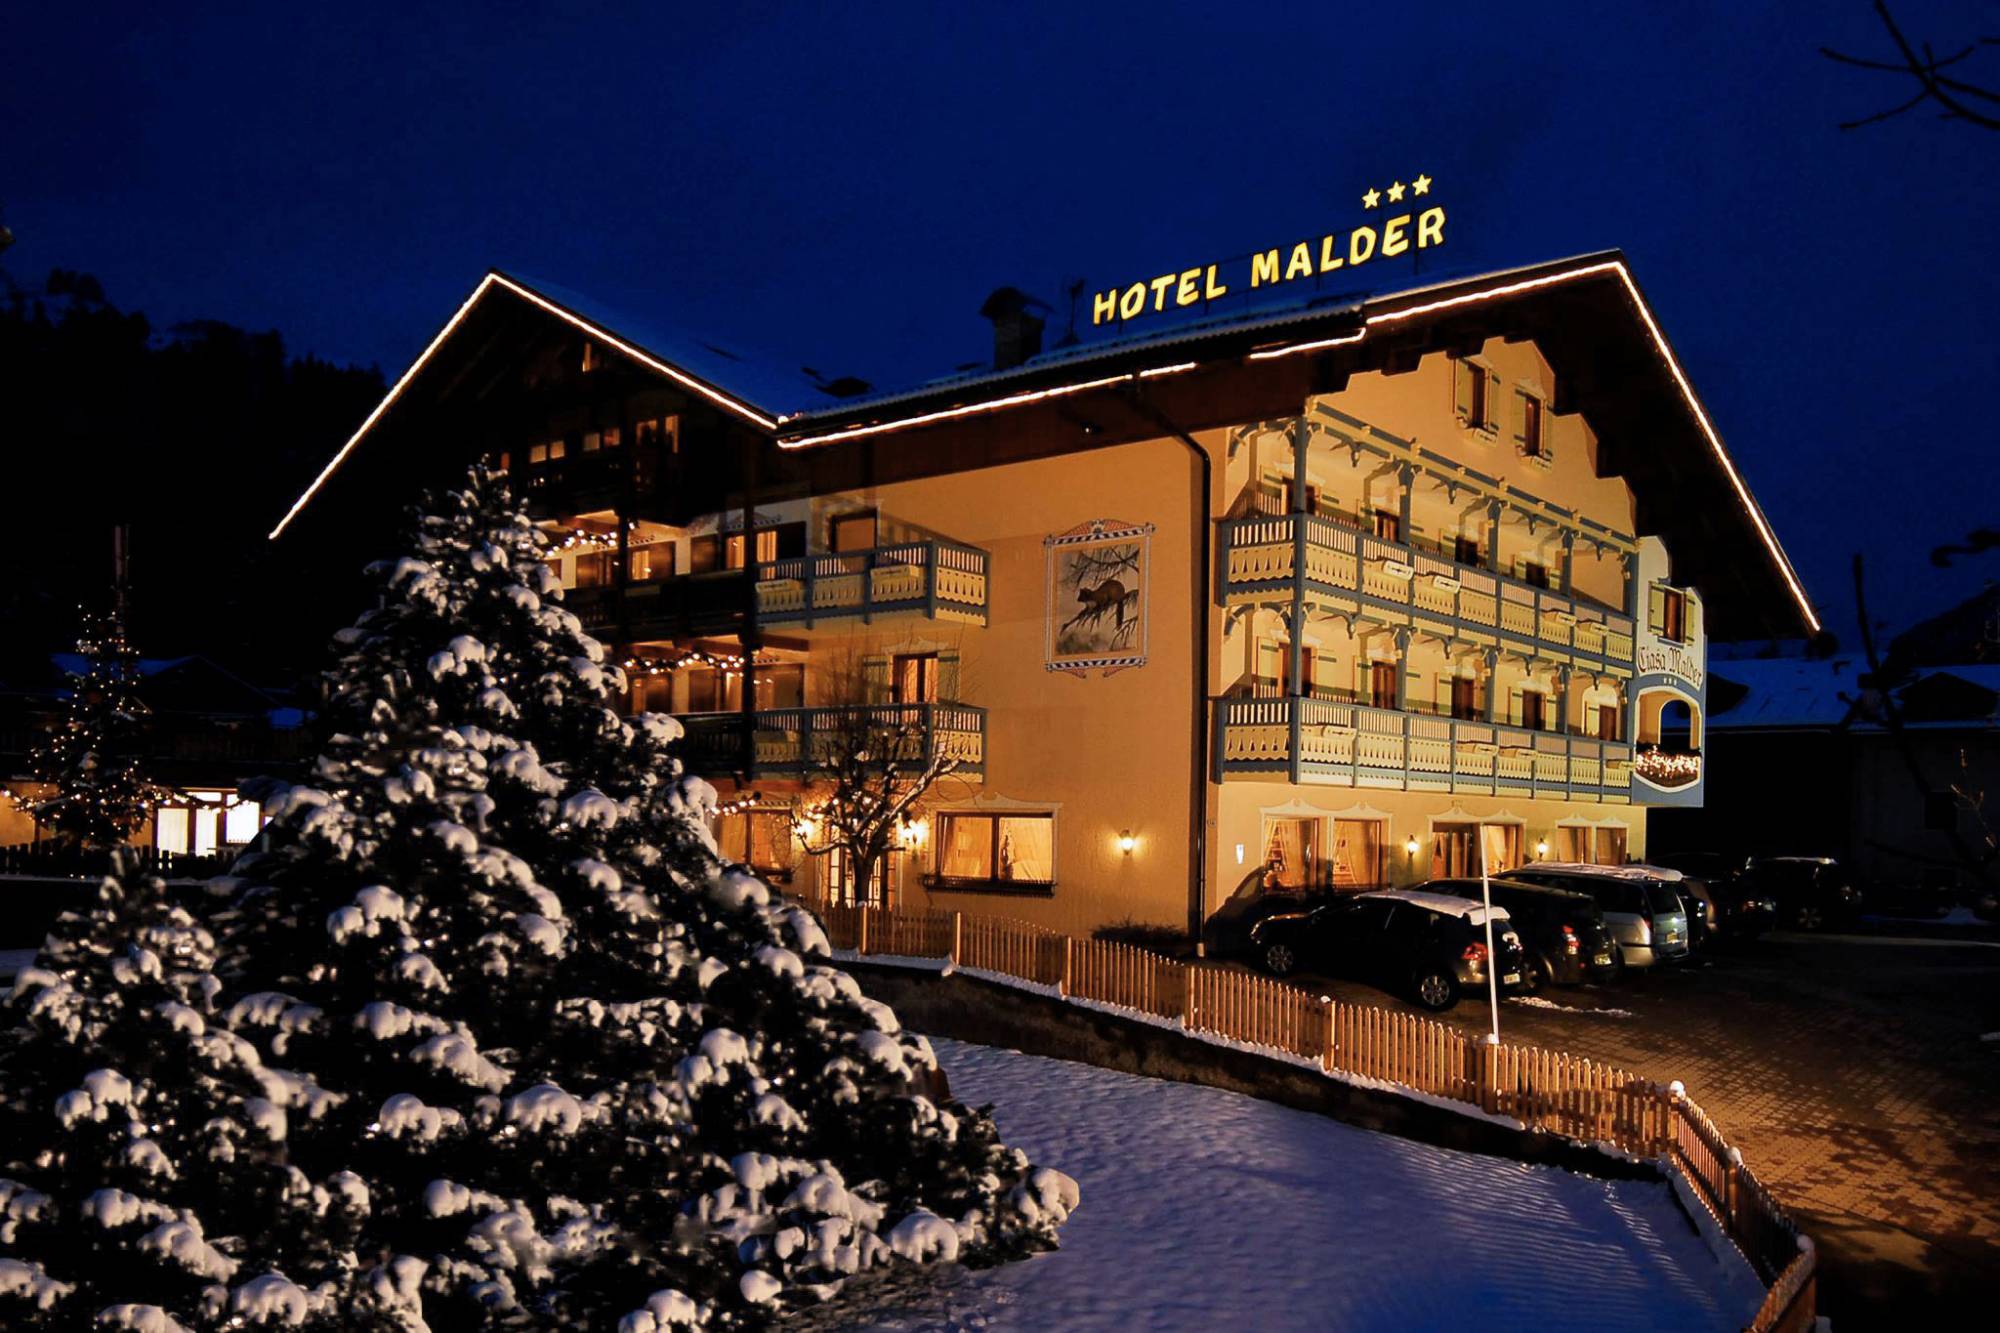 Hotel Malder